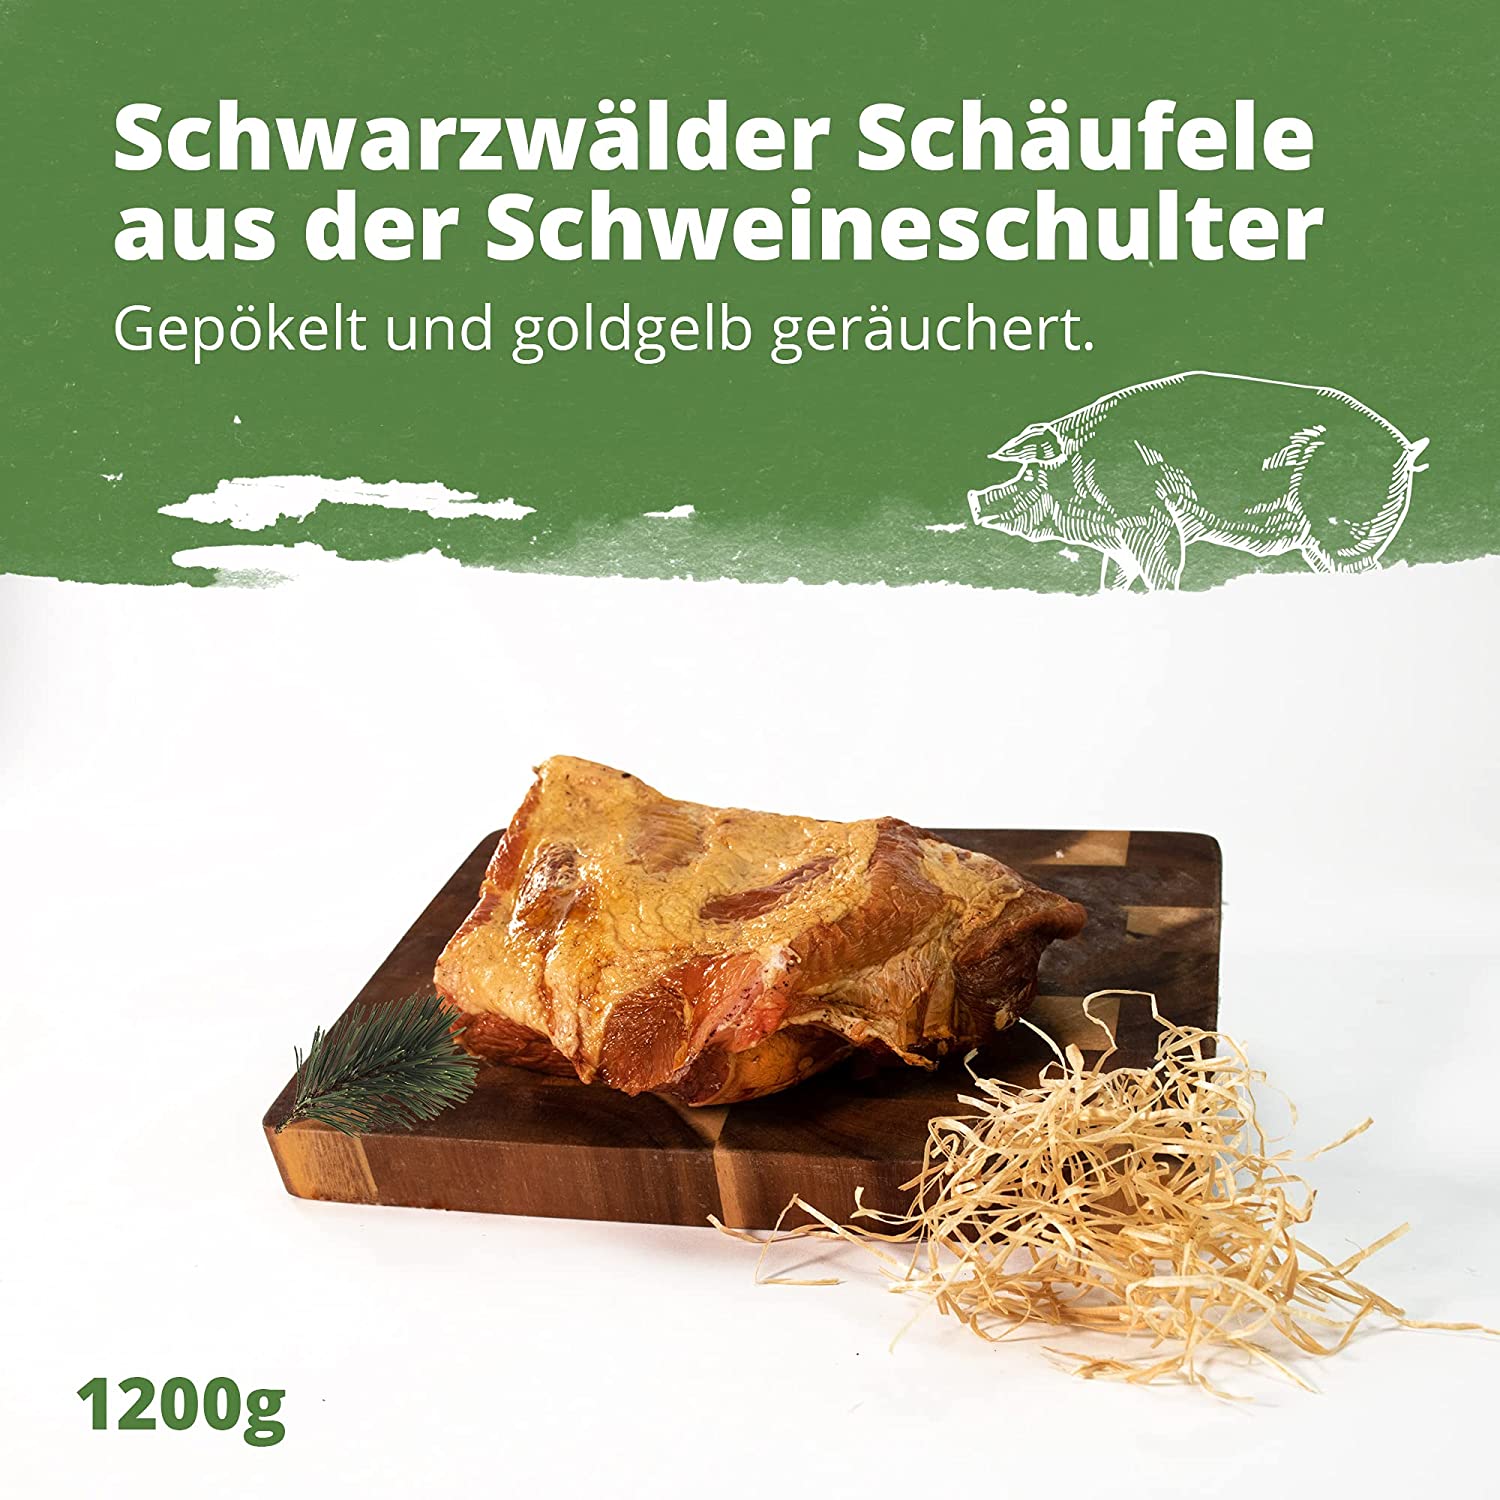 Schäufele-Paket goldgelb geräuchert 4 x 1200g = 4,8kg
